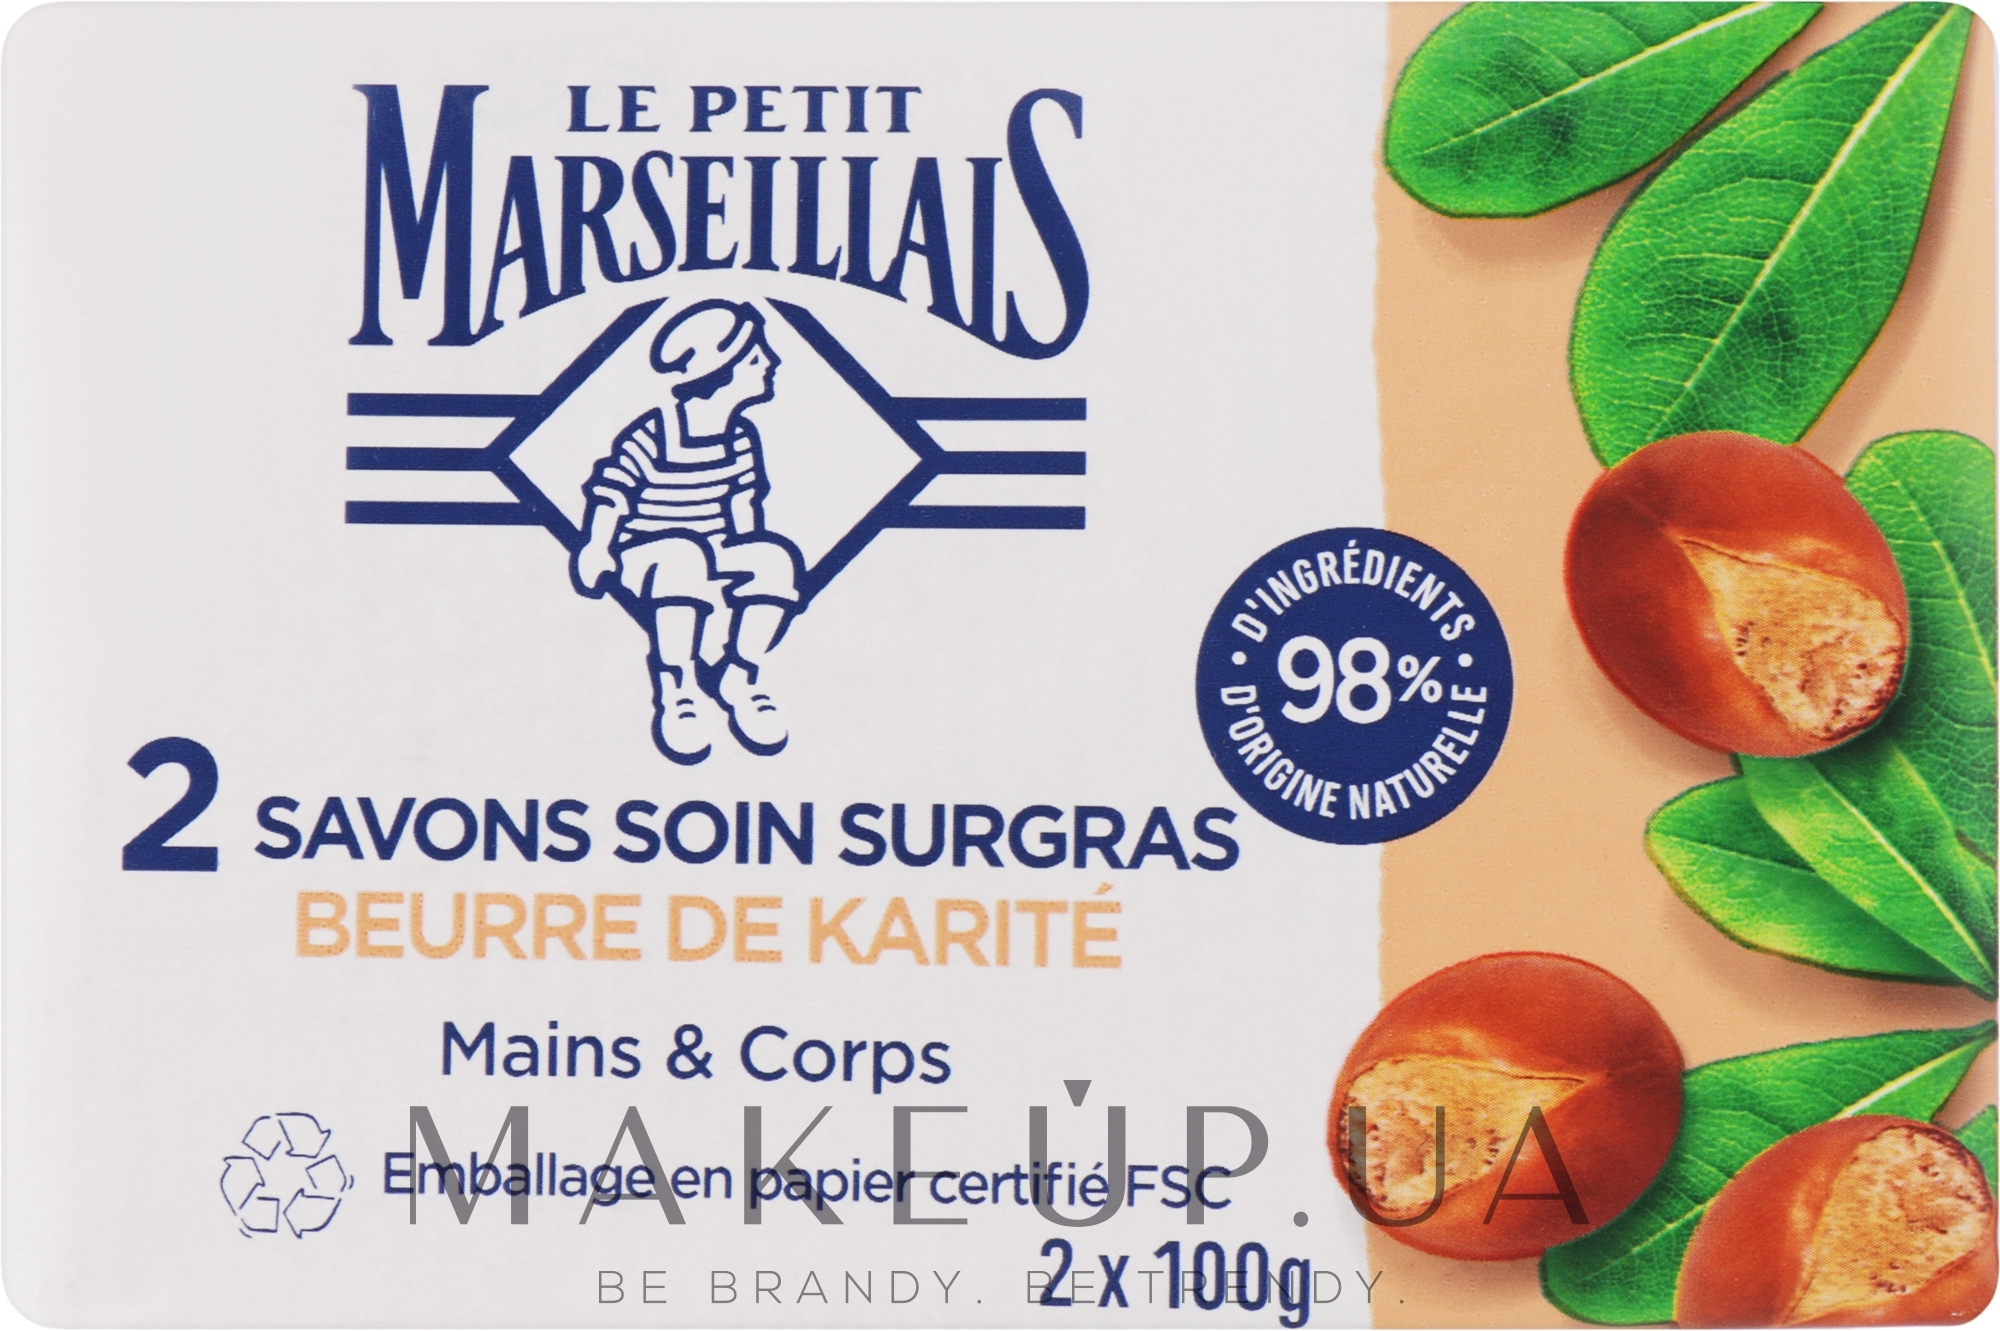 Набор мыла с маслом Ши - Le Petit Marseillais (2x100g) — фото 2x100g